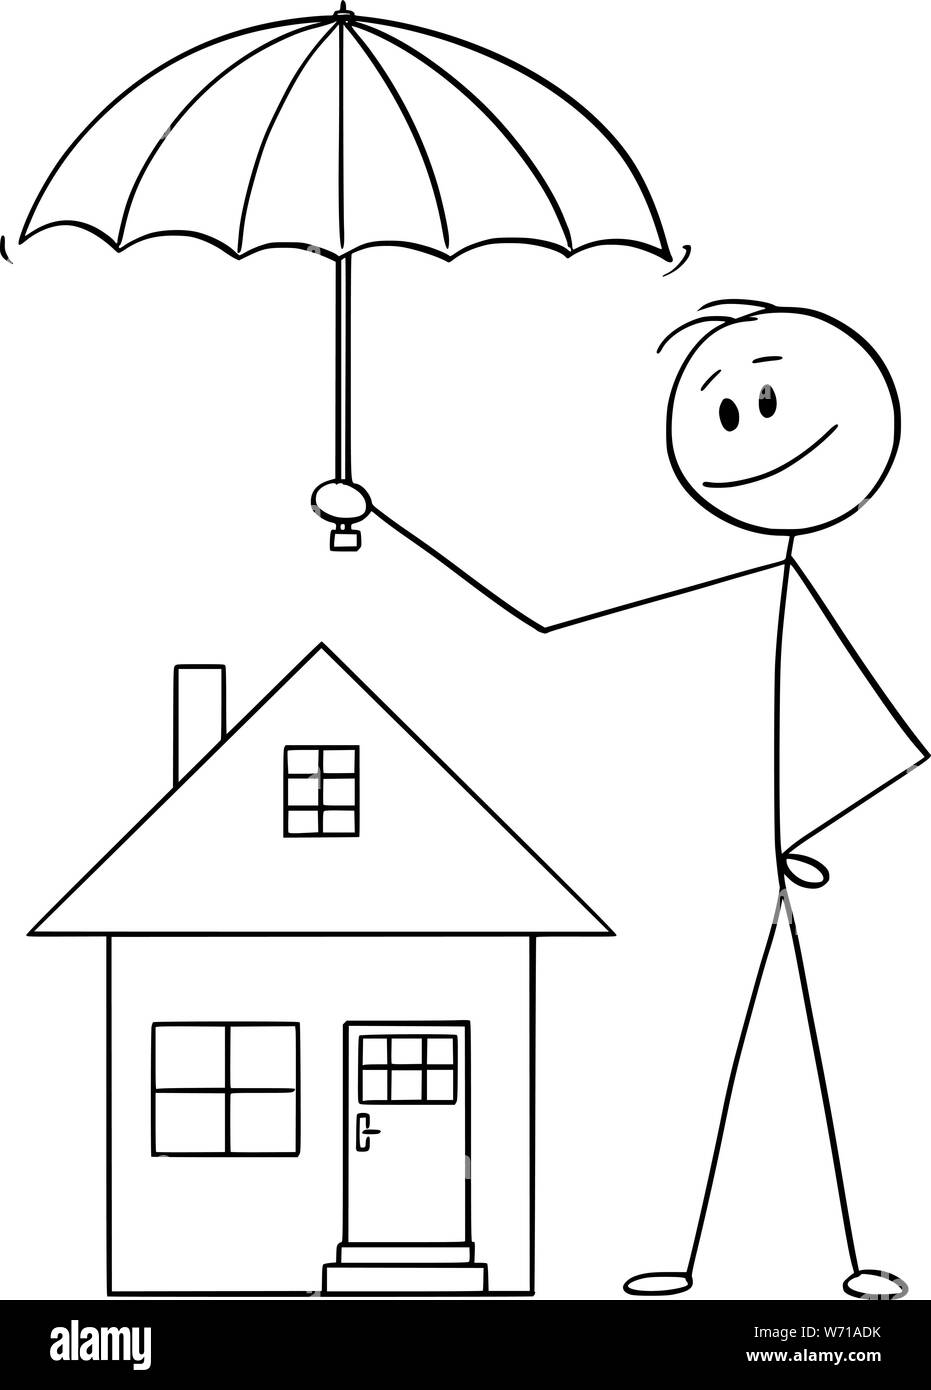 Vector cartoon stick figure dessin illustration conceptuelle de l'homme, homme d'affaires ou agent d'assurance holding umbrella protégeant la maison de famille. Illustration de Vecteur